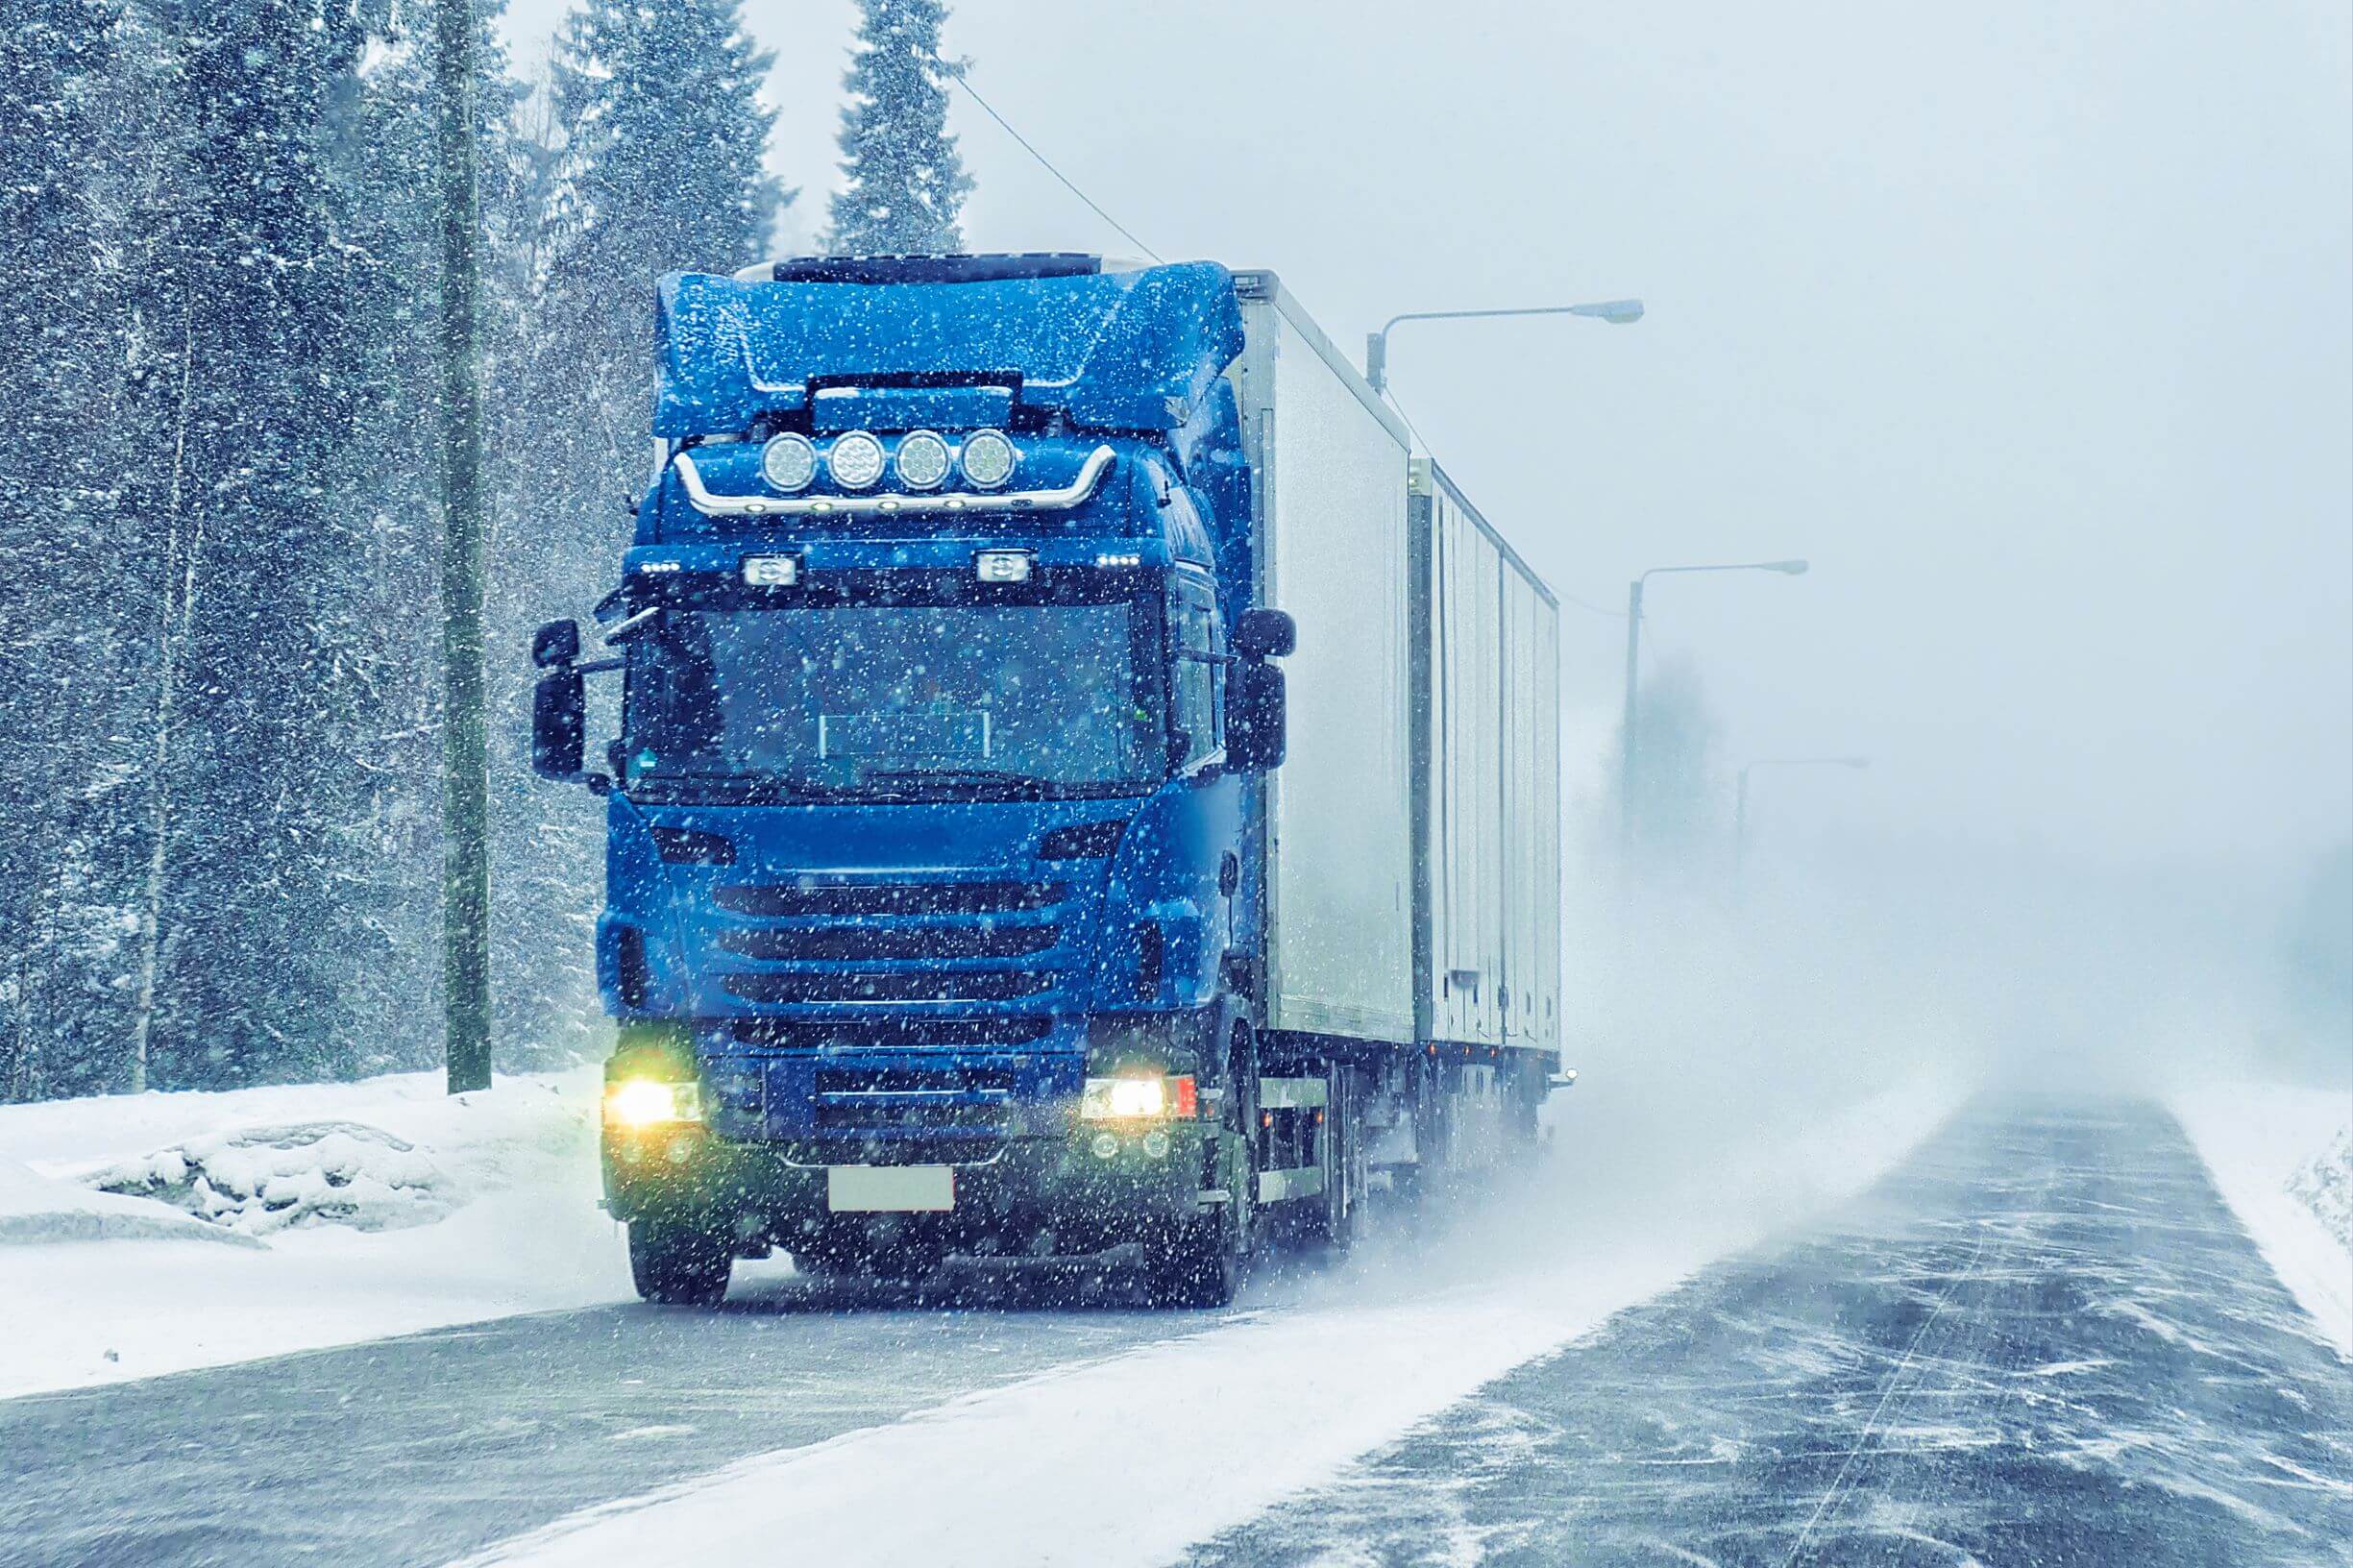 Как подготовиться к перевозкам в зимнее время года?